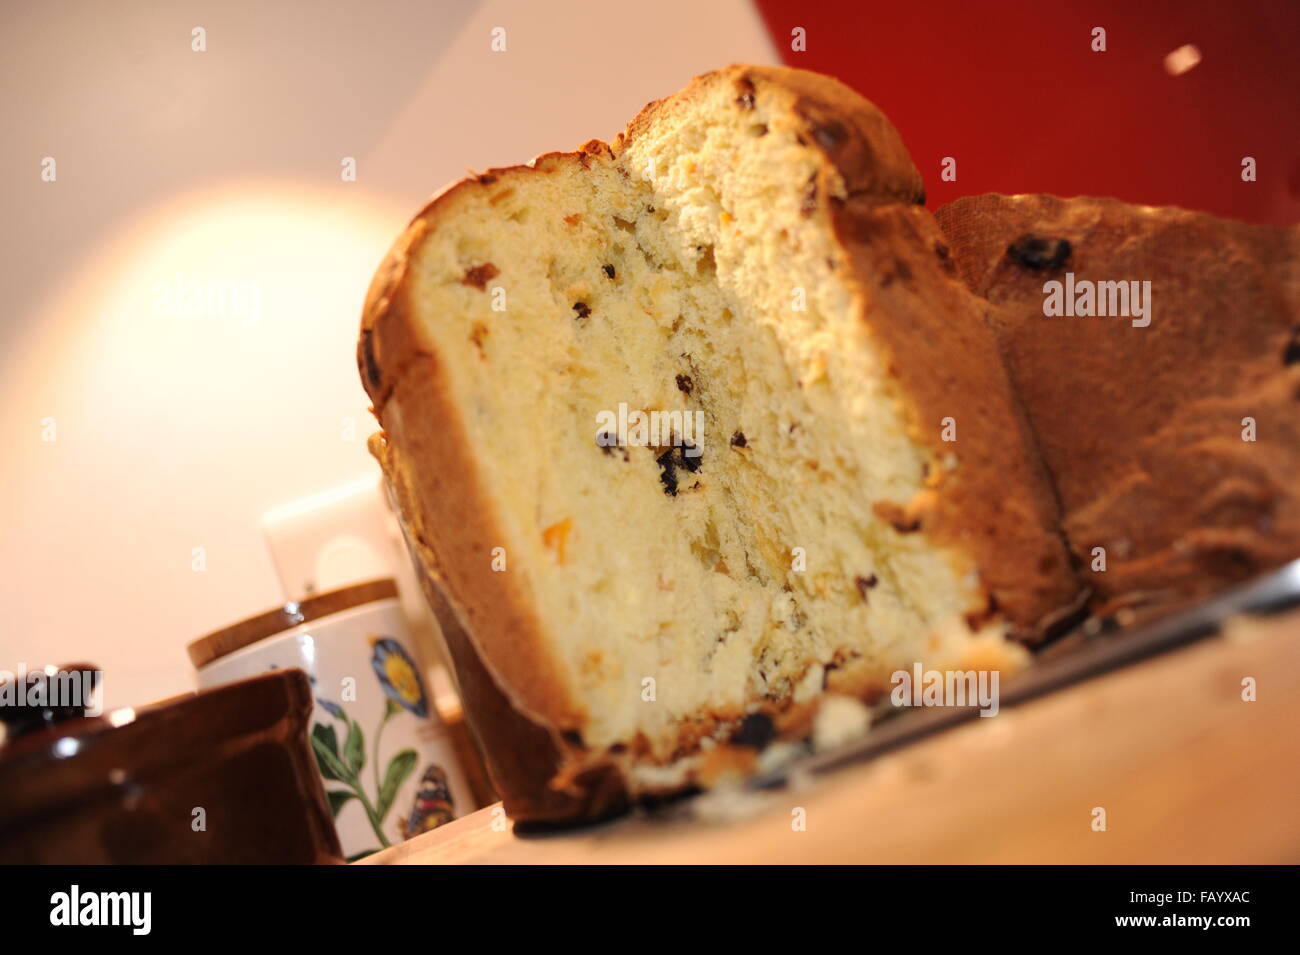 Panettone ist eine Art von süßem Brot Brot ursprünglich aus Mailand Italien traditionell zu Weihnachten gegessen Stockfoto